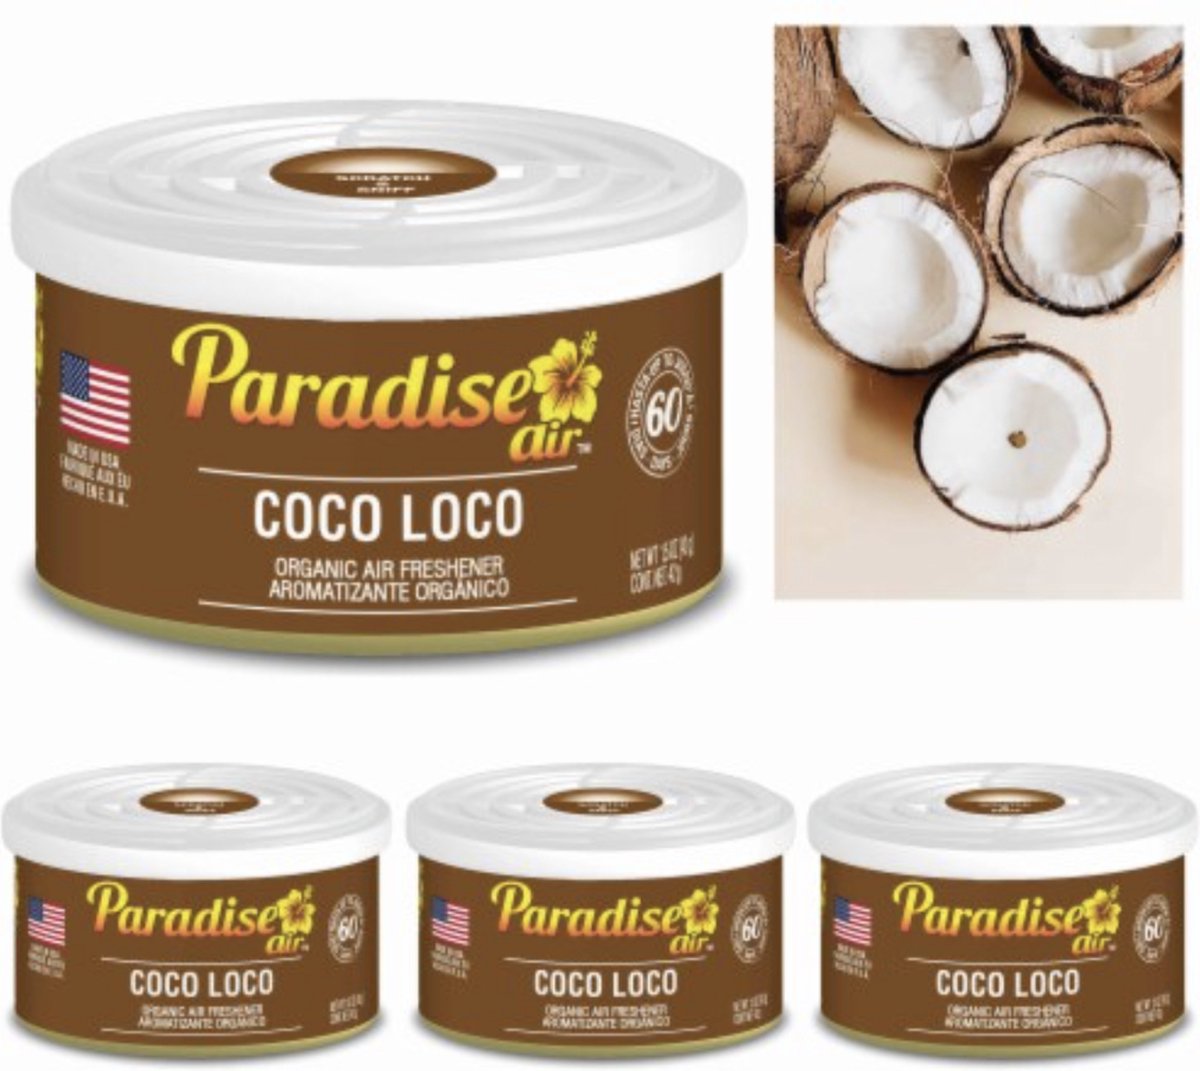 4 x Paradise air organic air freshener Coco Loco